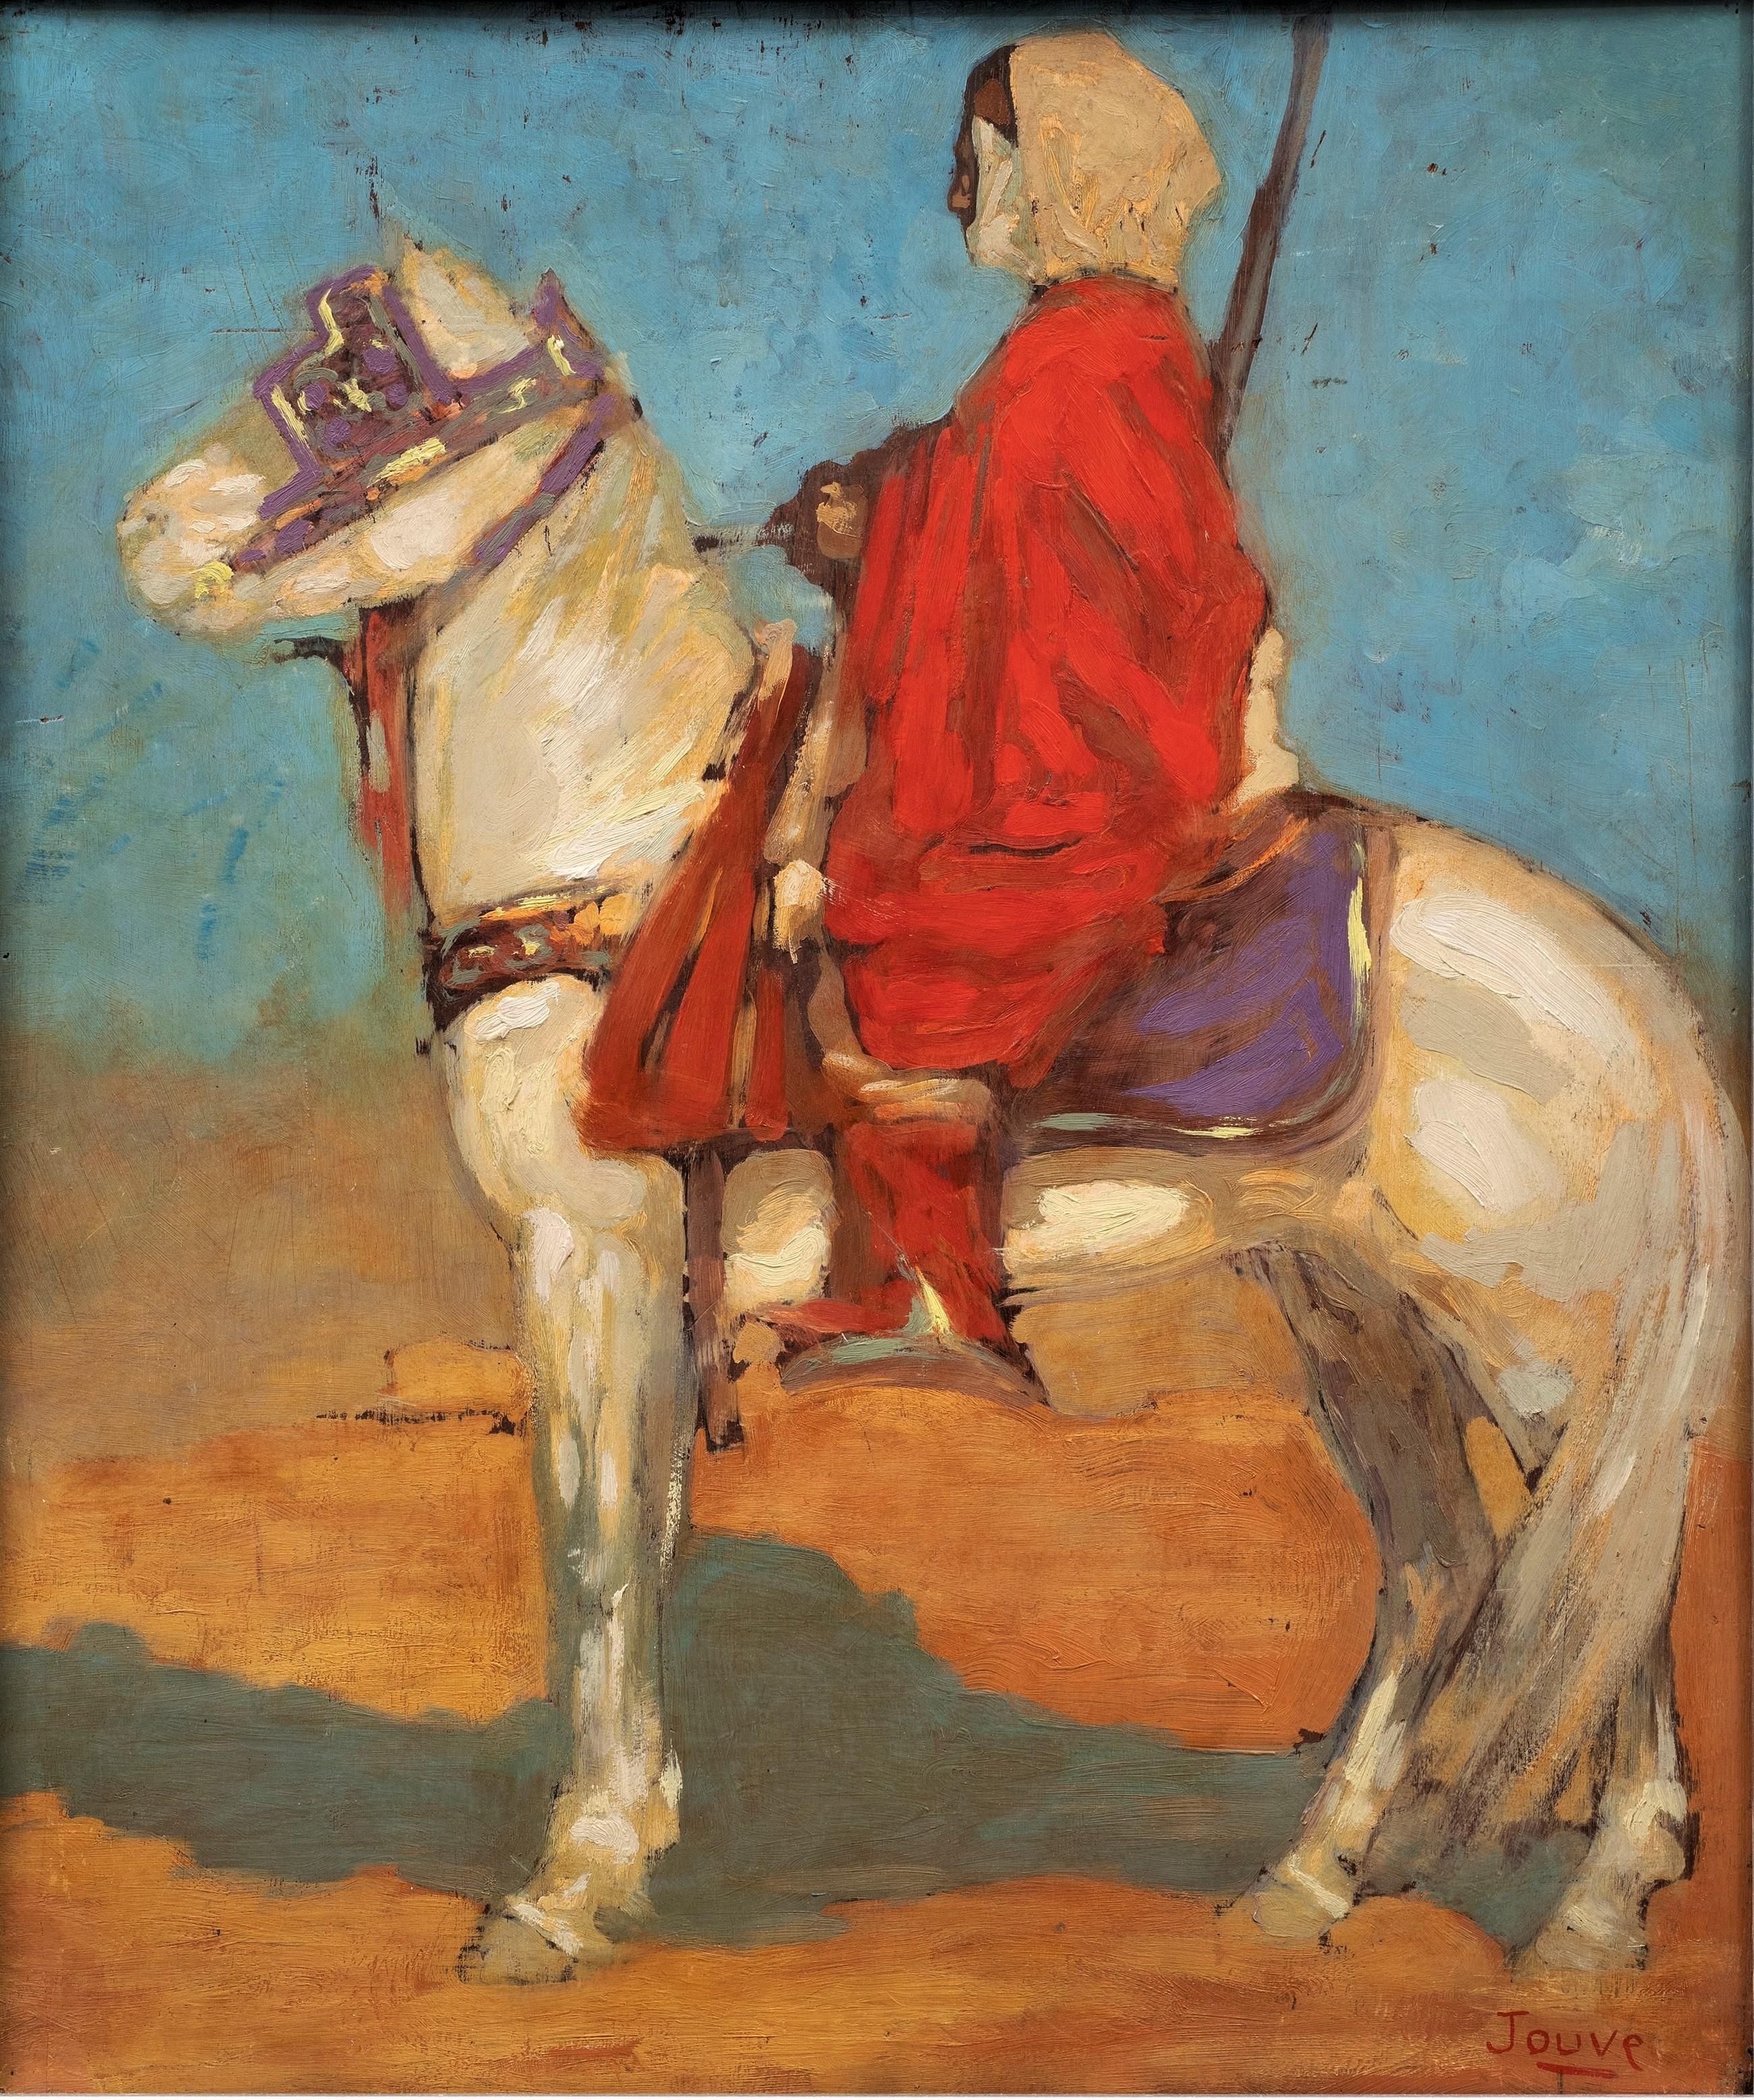 Orientalisches Gemälde, Tuareg-Pferd im Wüsten, 1908, von Paul Jouve – Painting von Pierre-Paul Jouve